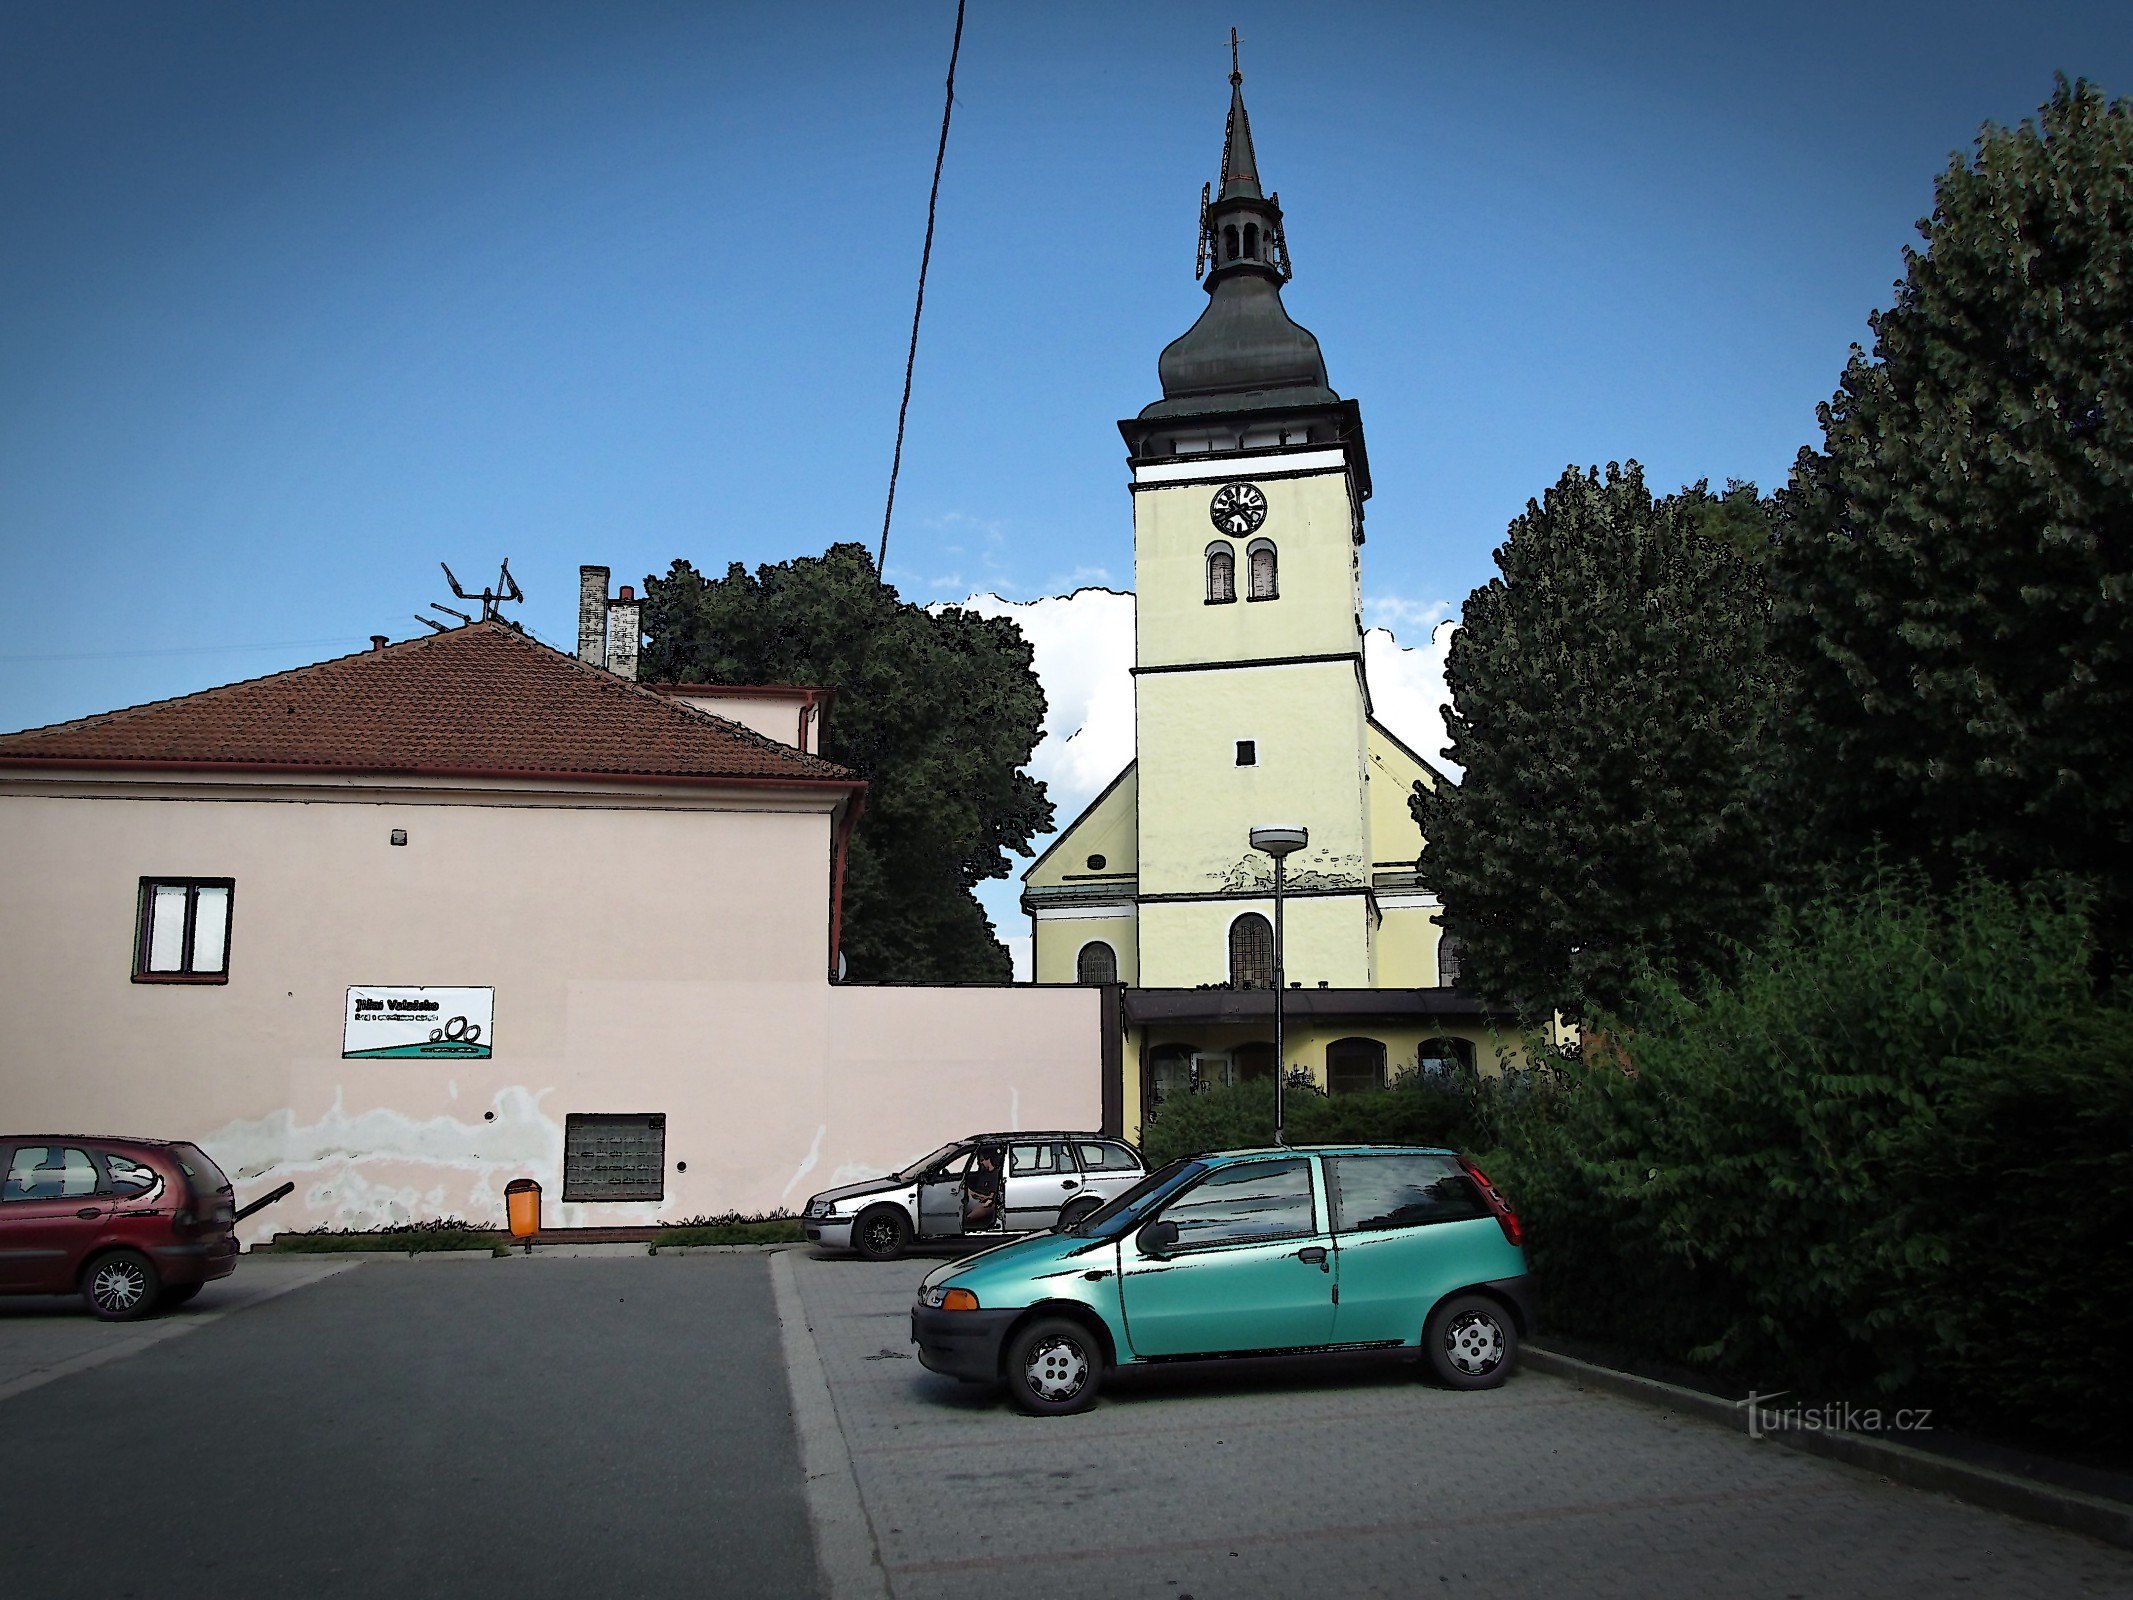 Vizovice - församlingskyrkan St. Lawrence